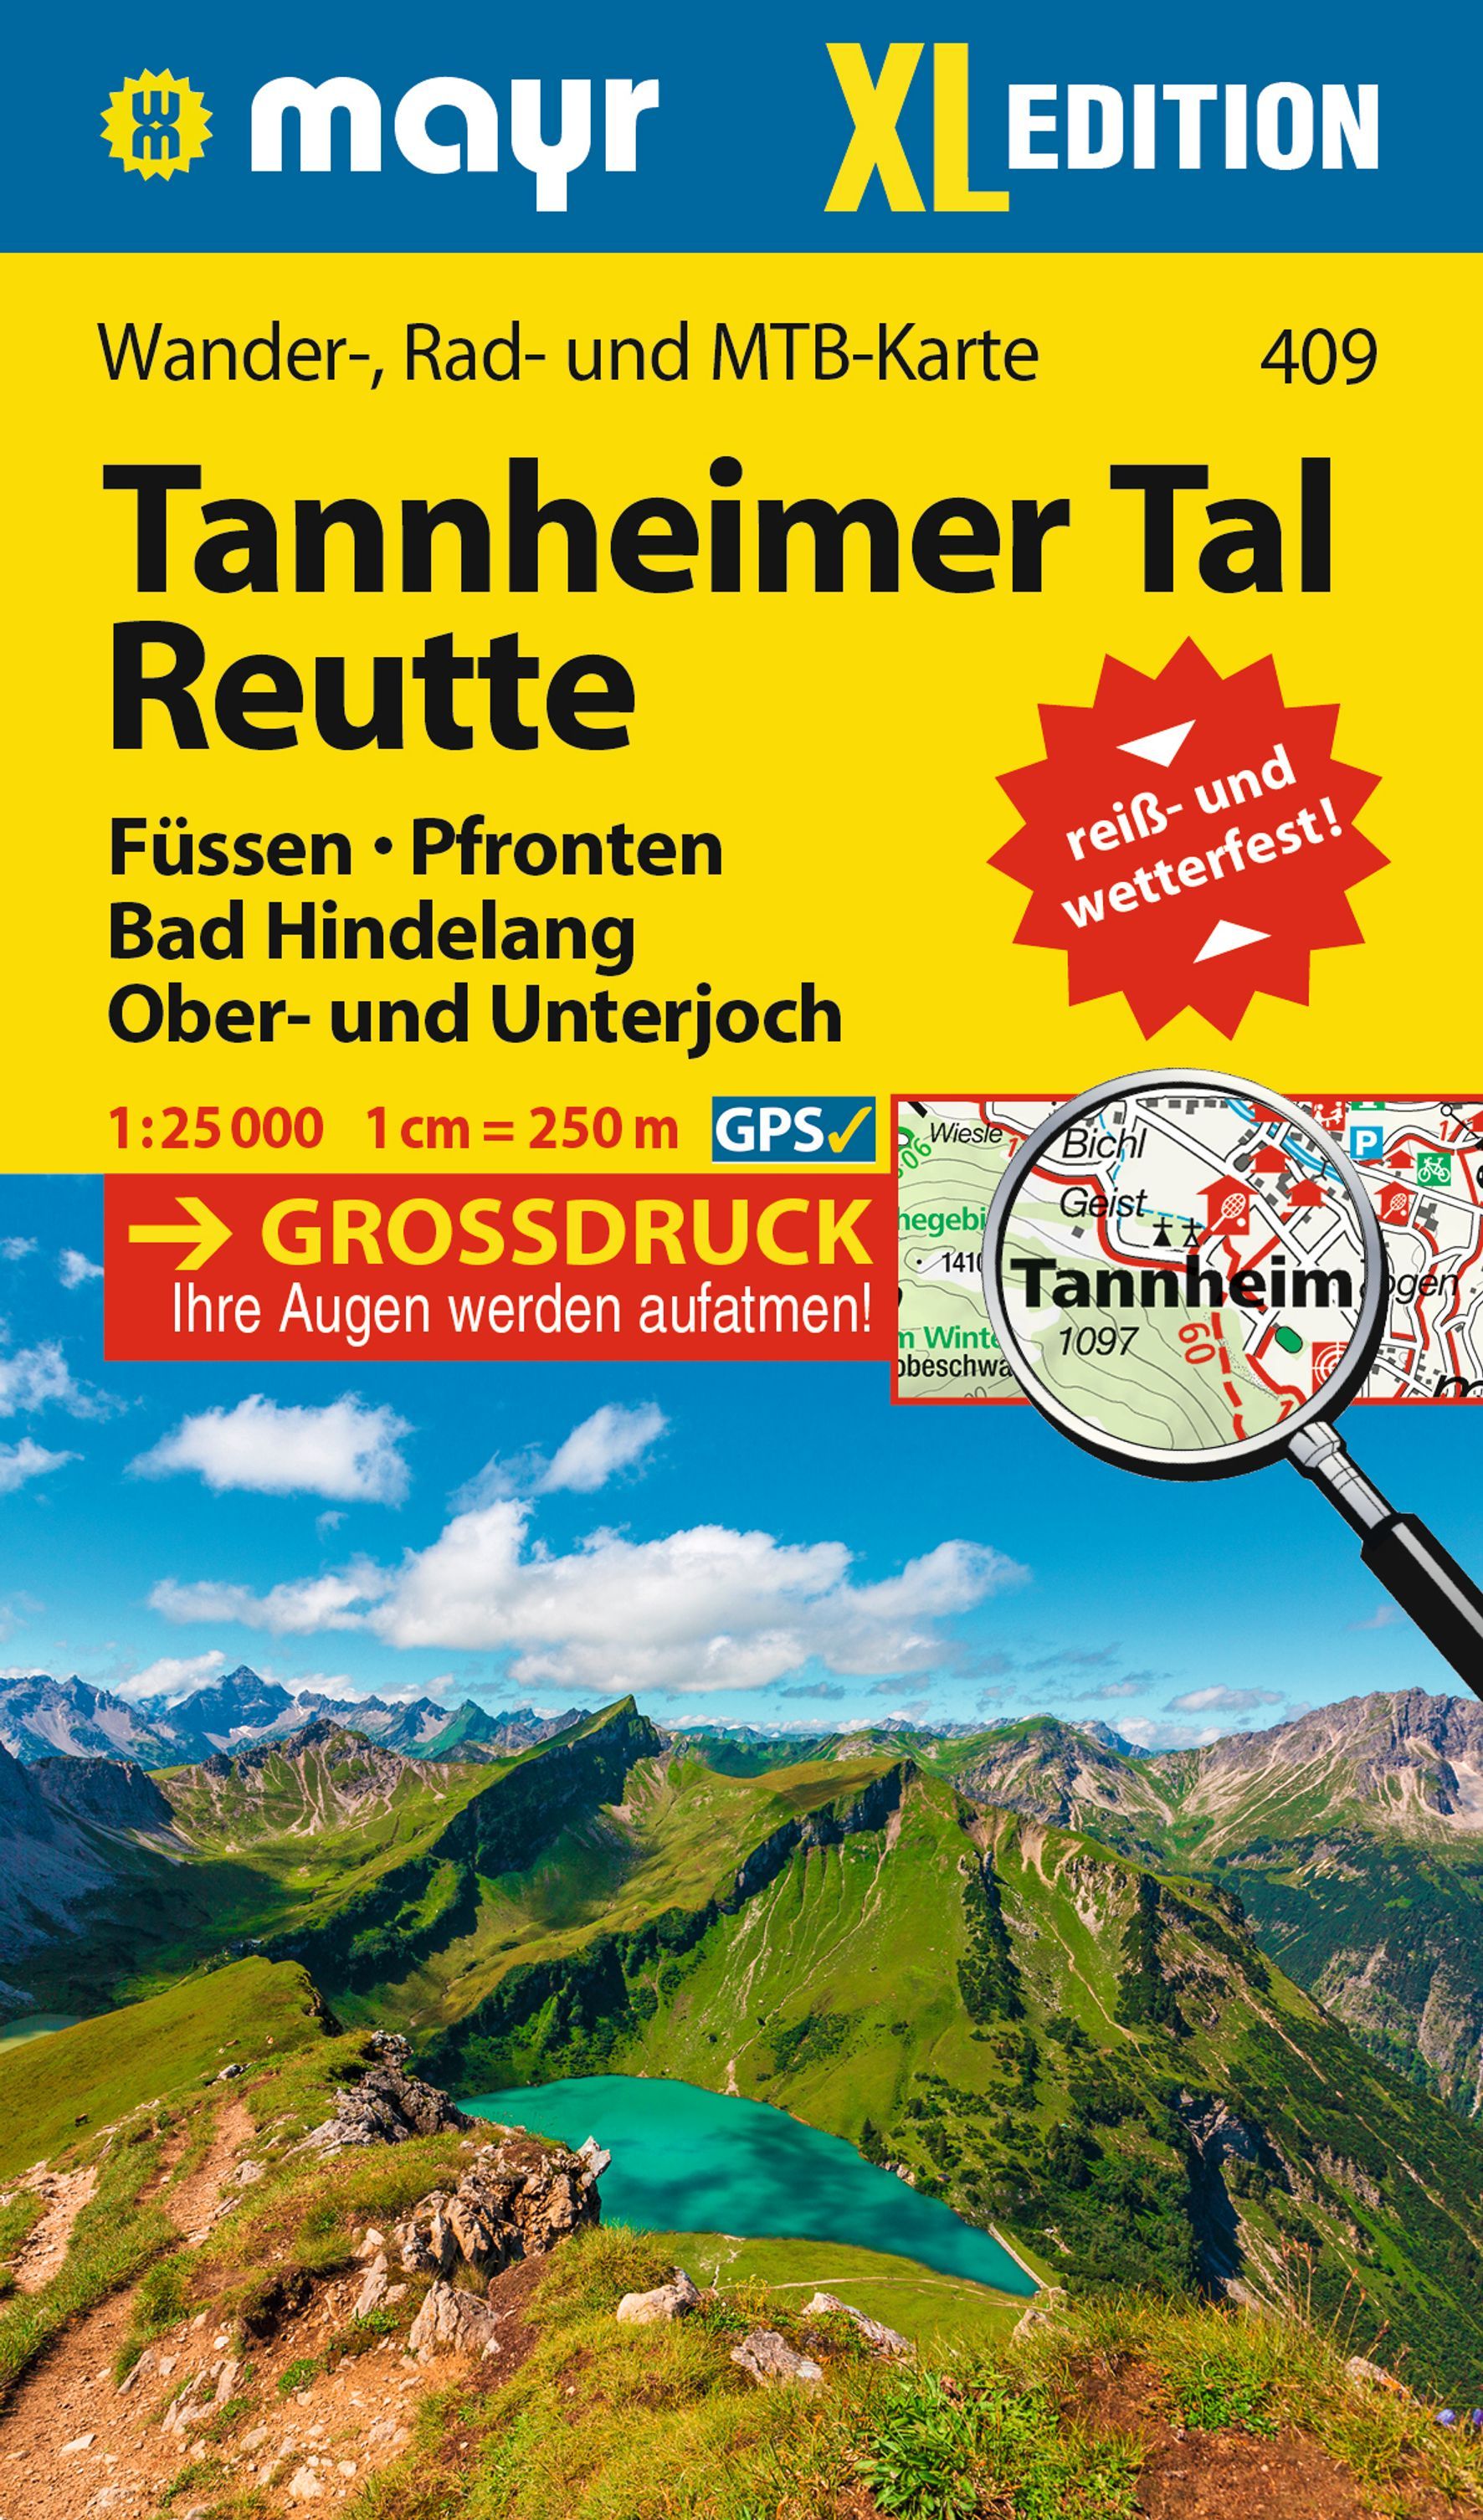 Online bestellen: Wandelkaart 409 XL Tannheimer Tal - Reutte | Mayr